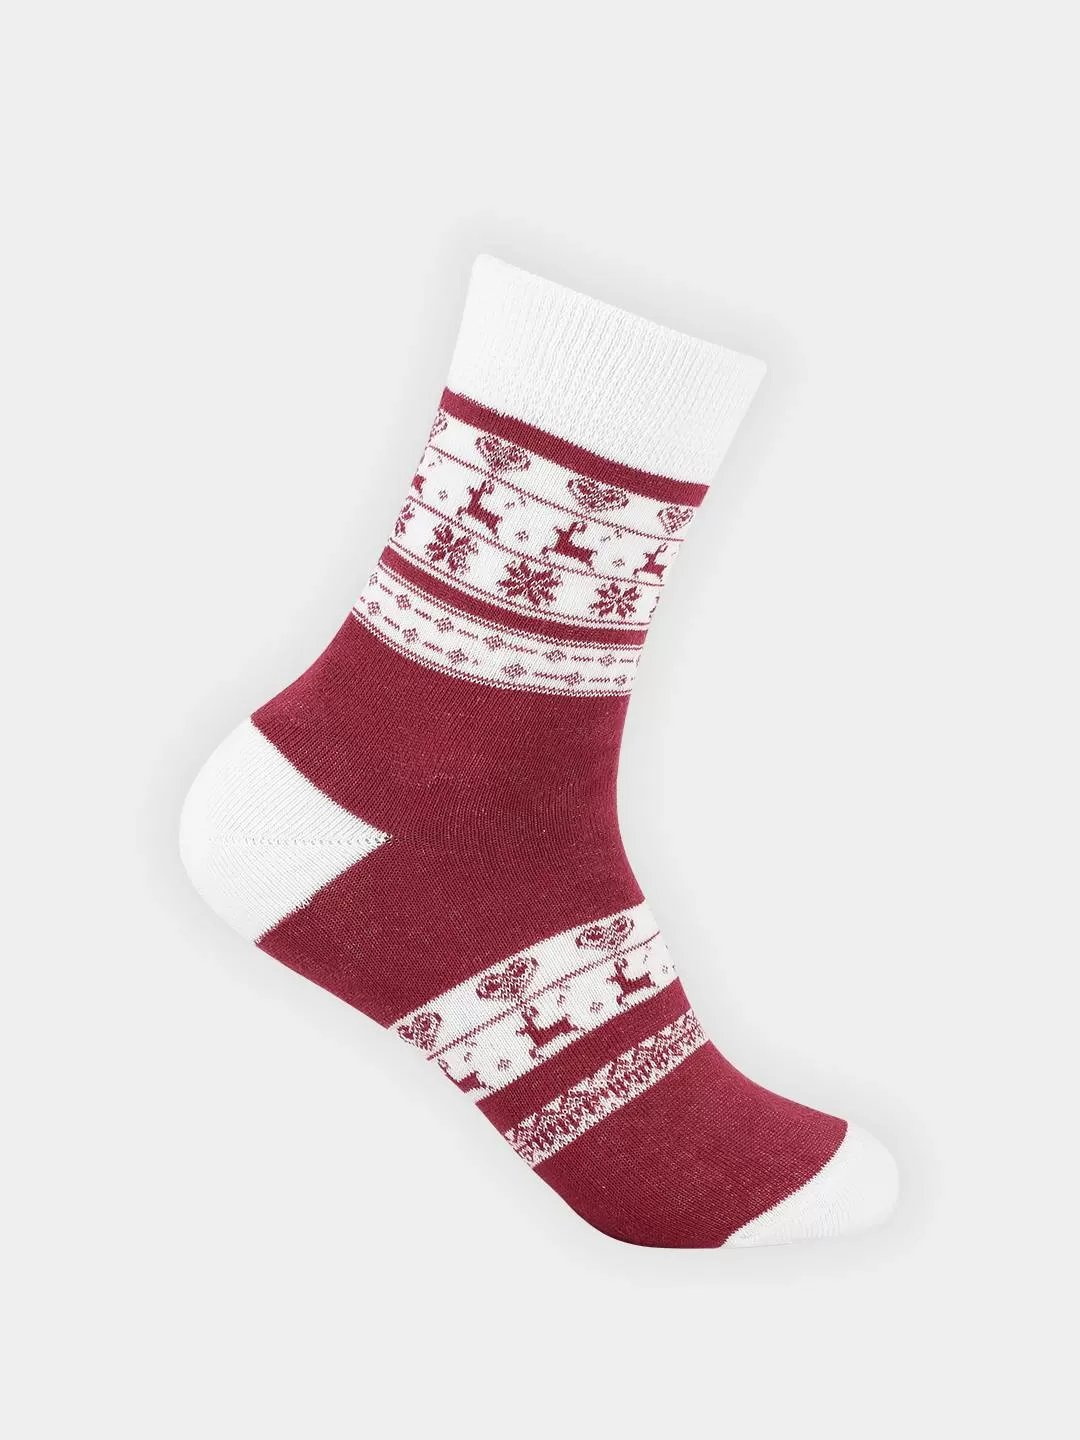 Теплые носочки от Деда мороза (36-40)